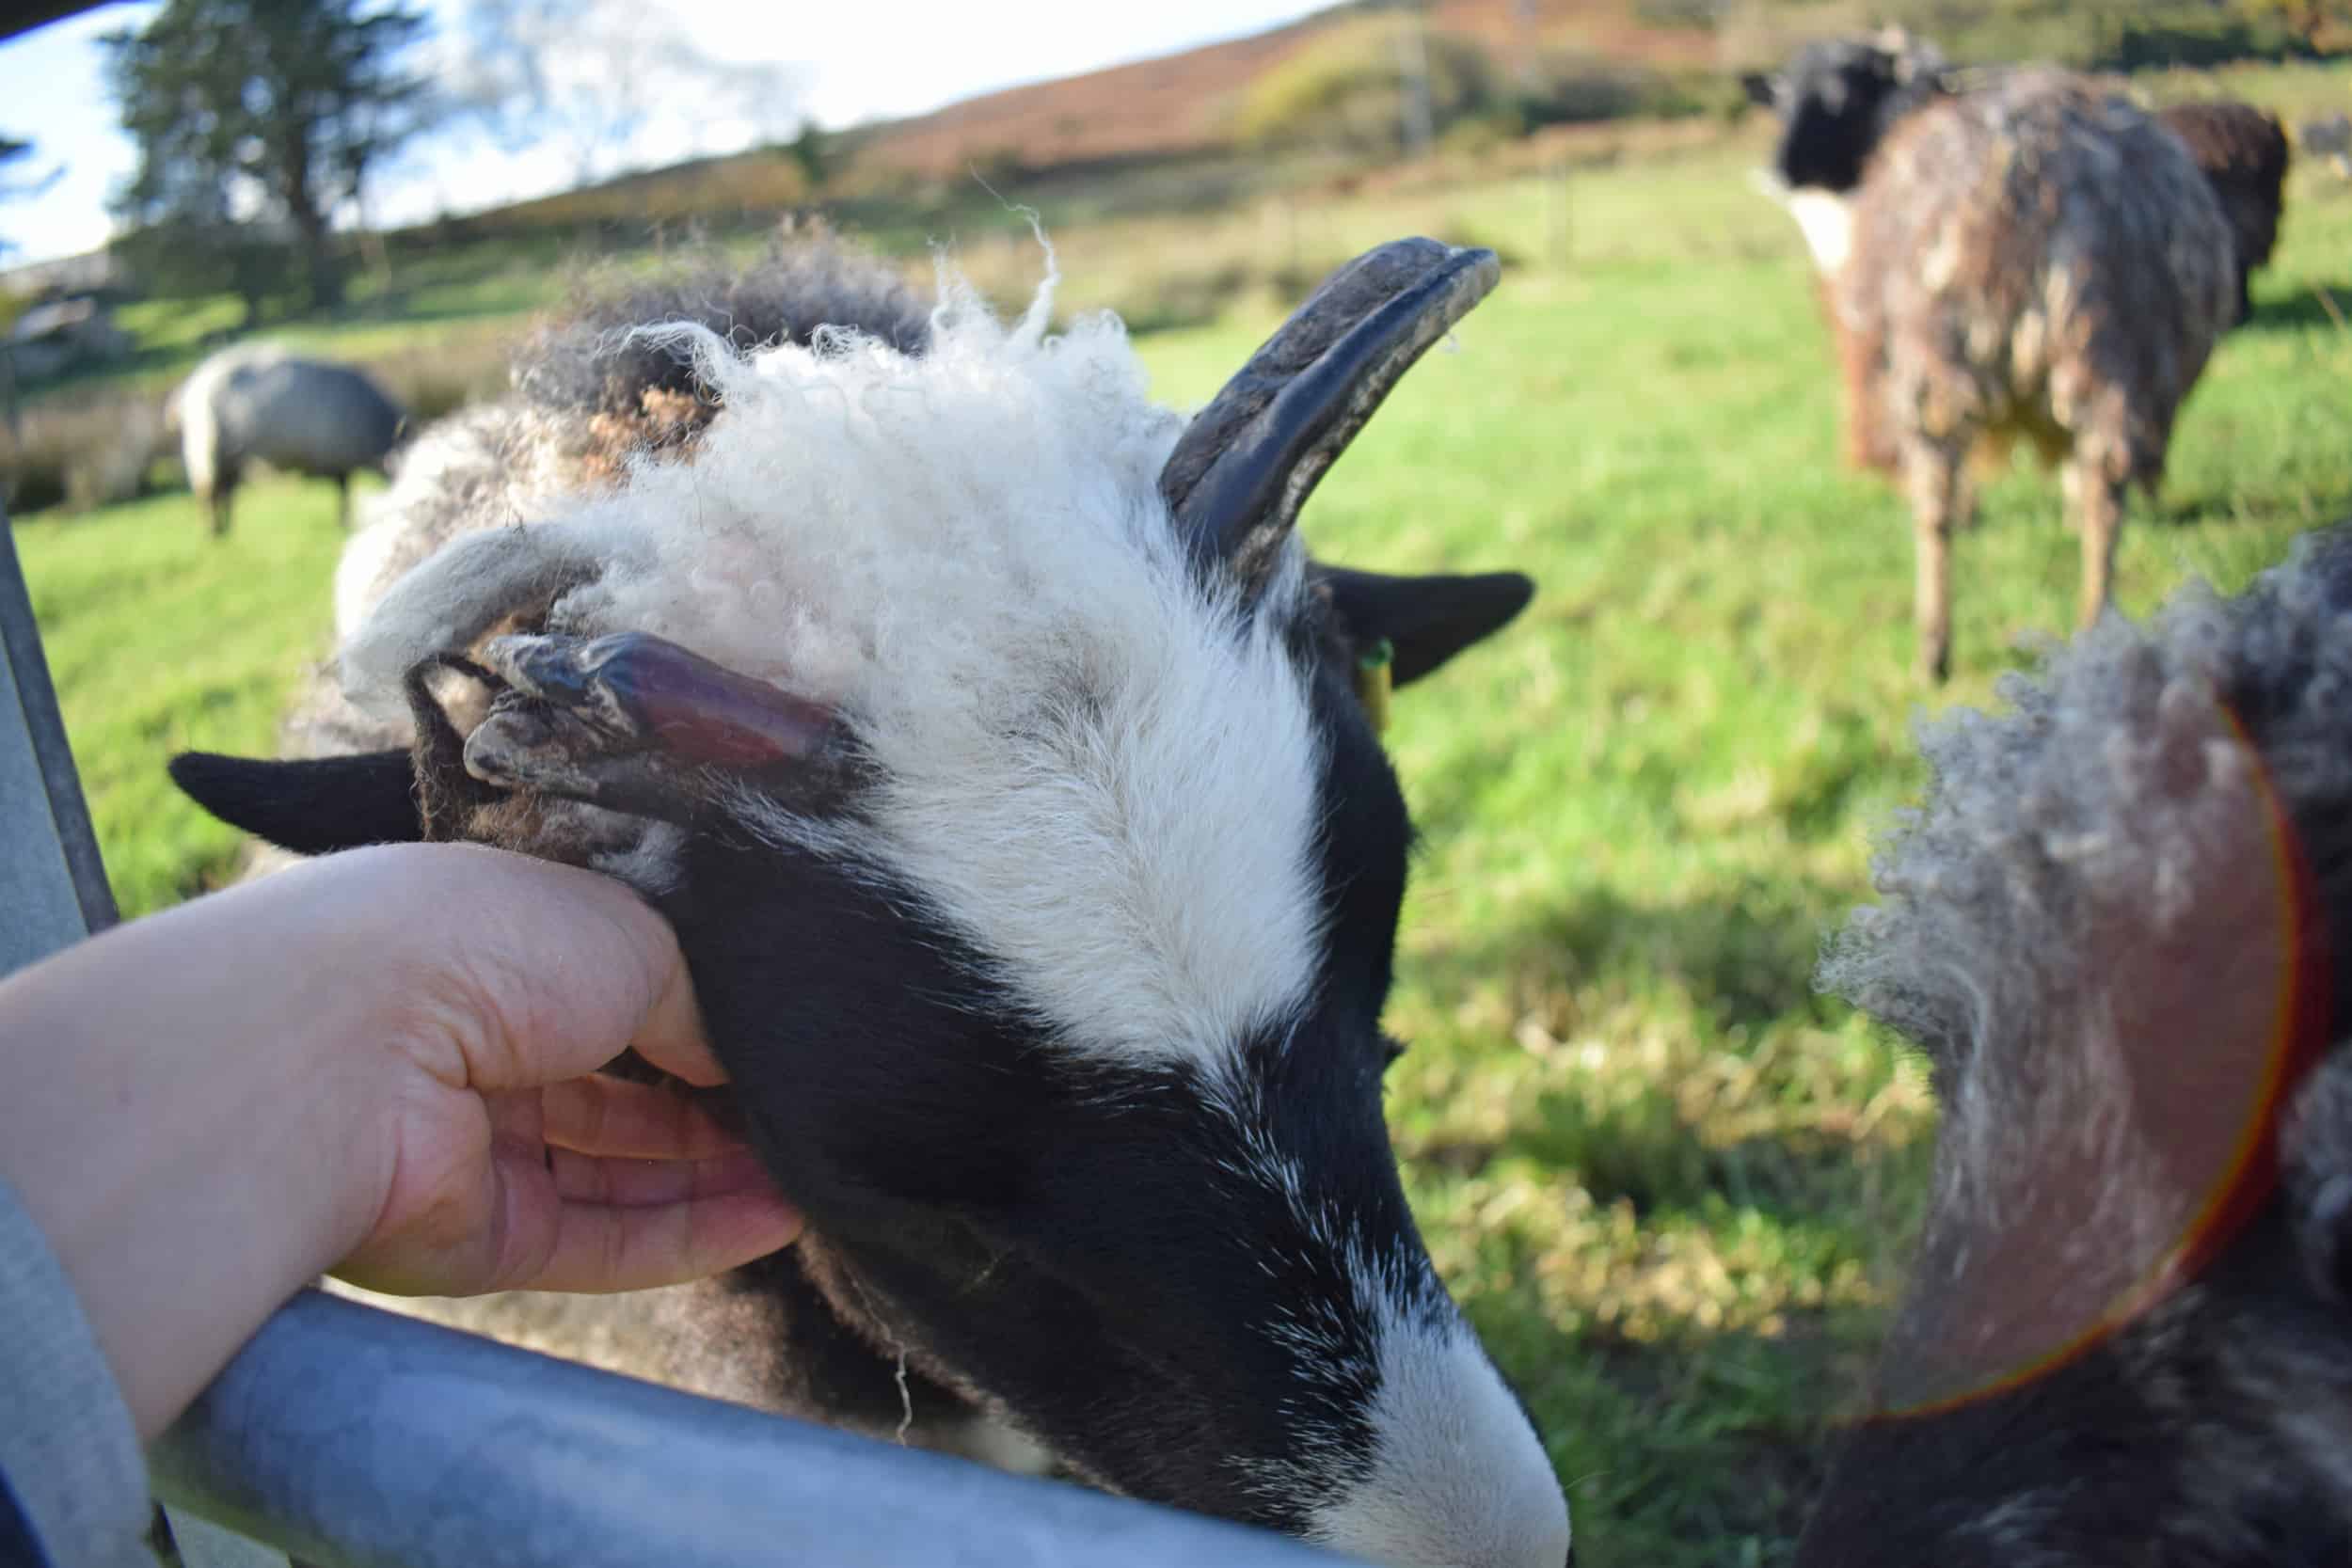 Holly pet lamb sheep jacob cross shetland spotted black grey white wales gwynedd kids farm life horns